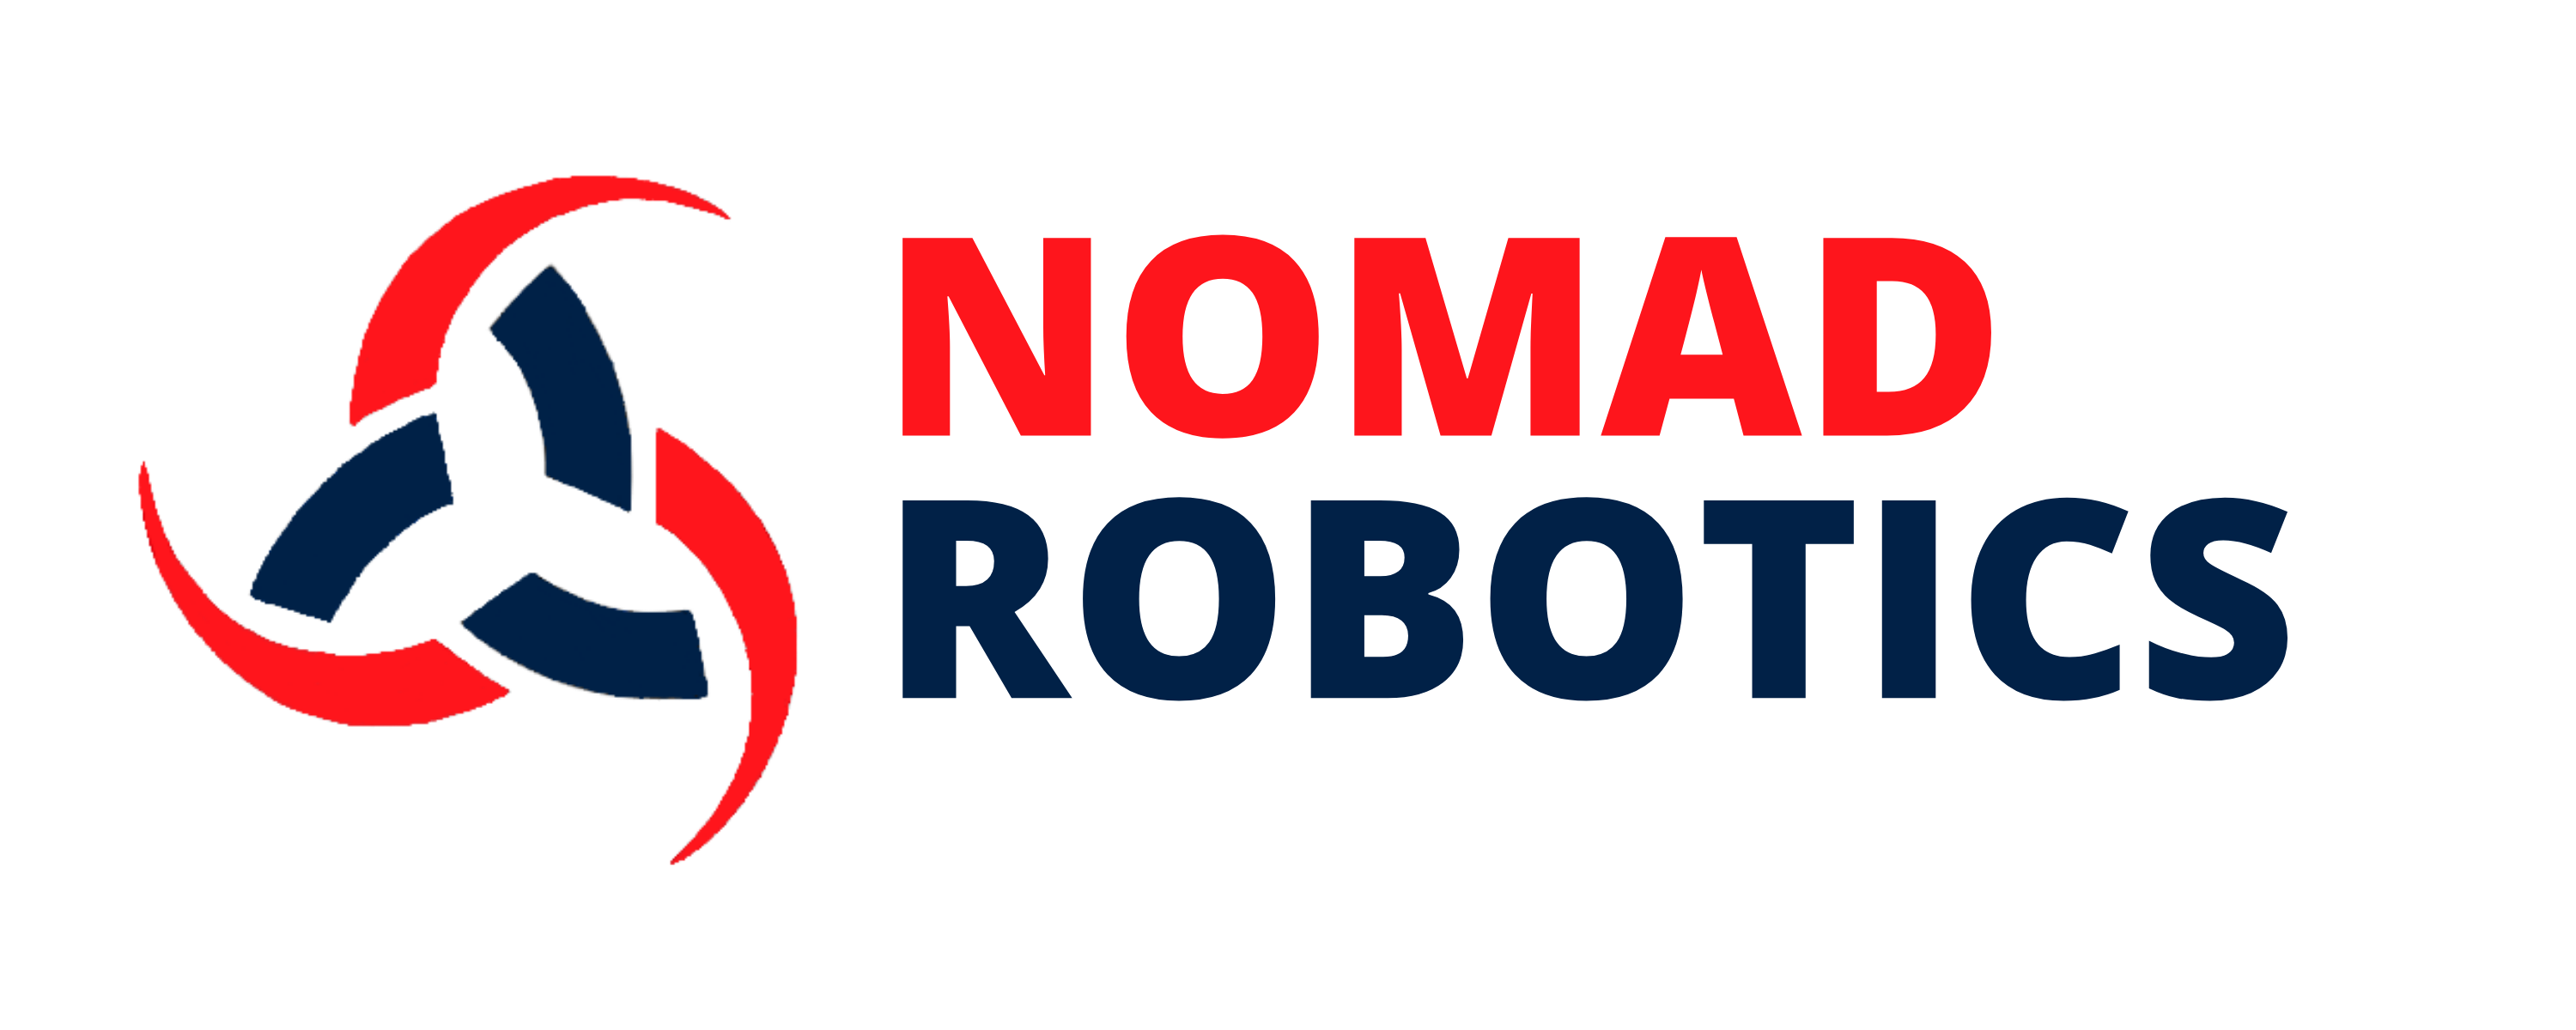 Nomad Robotics